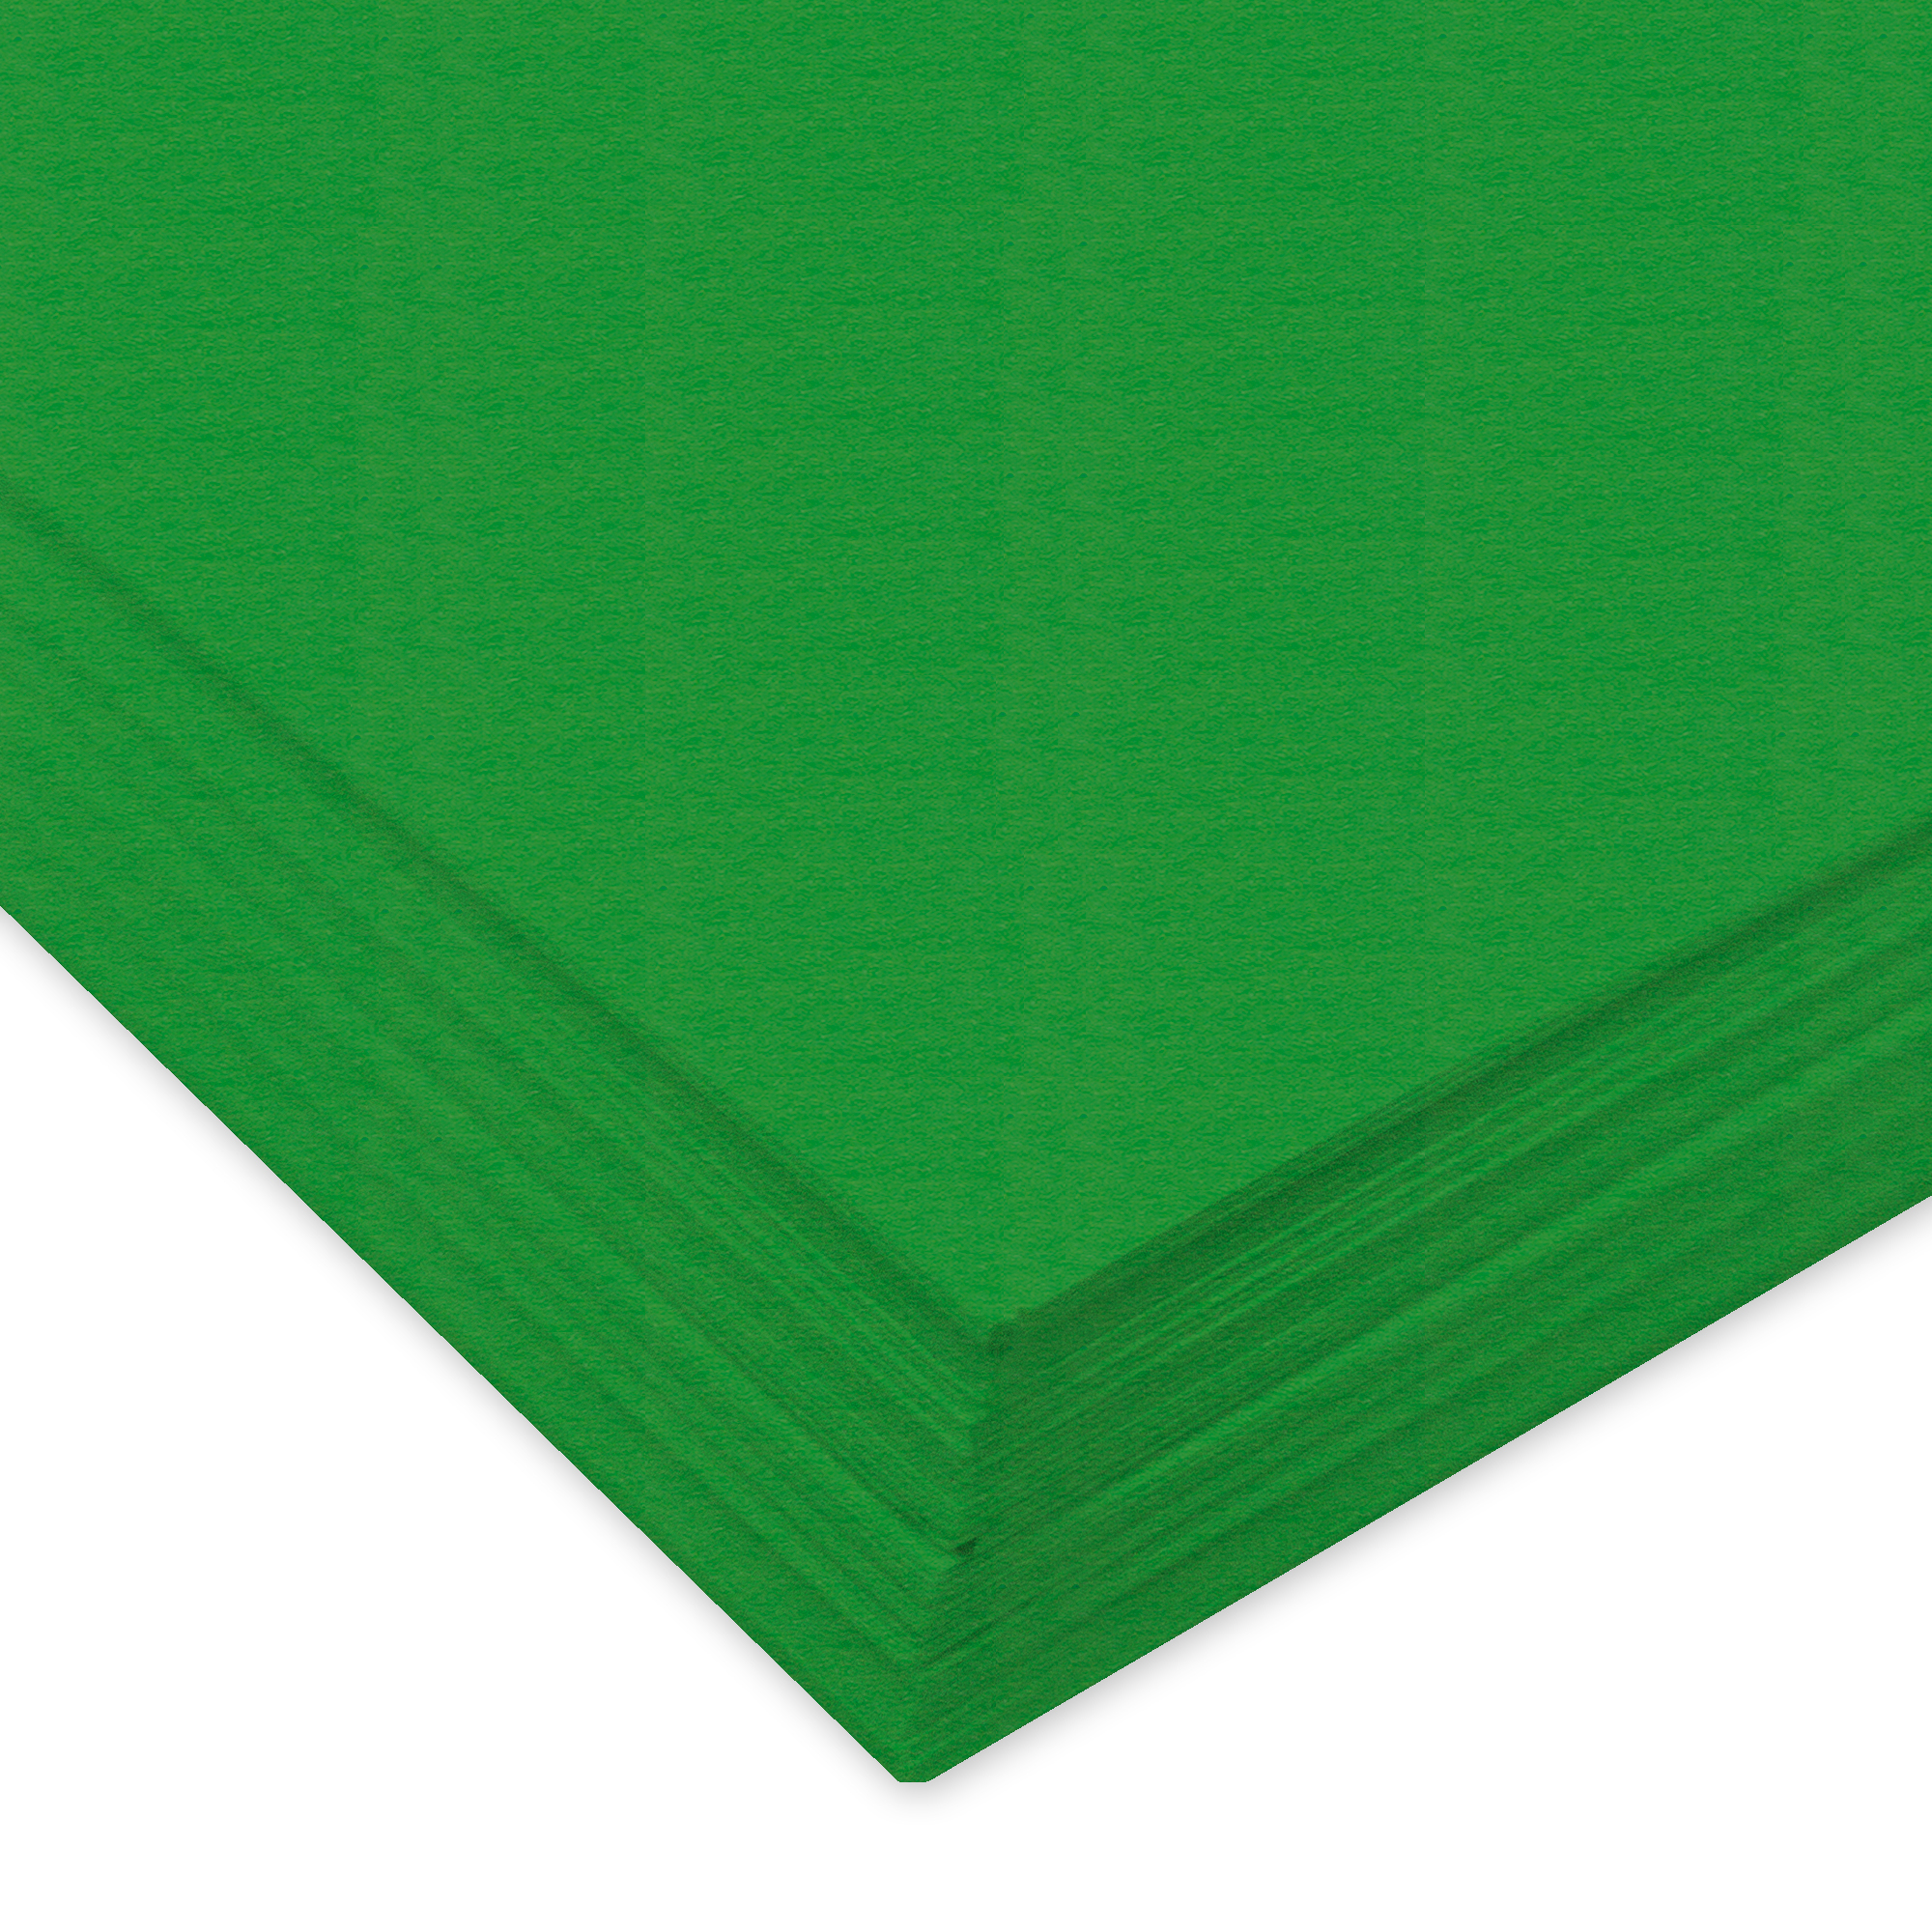 URSUS Papier à dessin couleur A3 2174053 130g, vert tilleul 100 feuill. 130g, vert tilleul 100 feuil